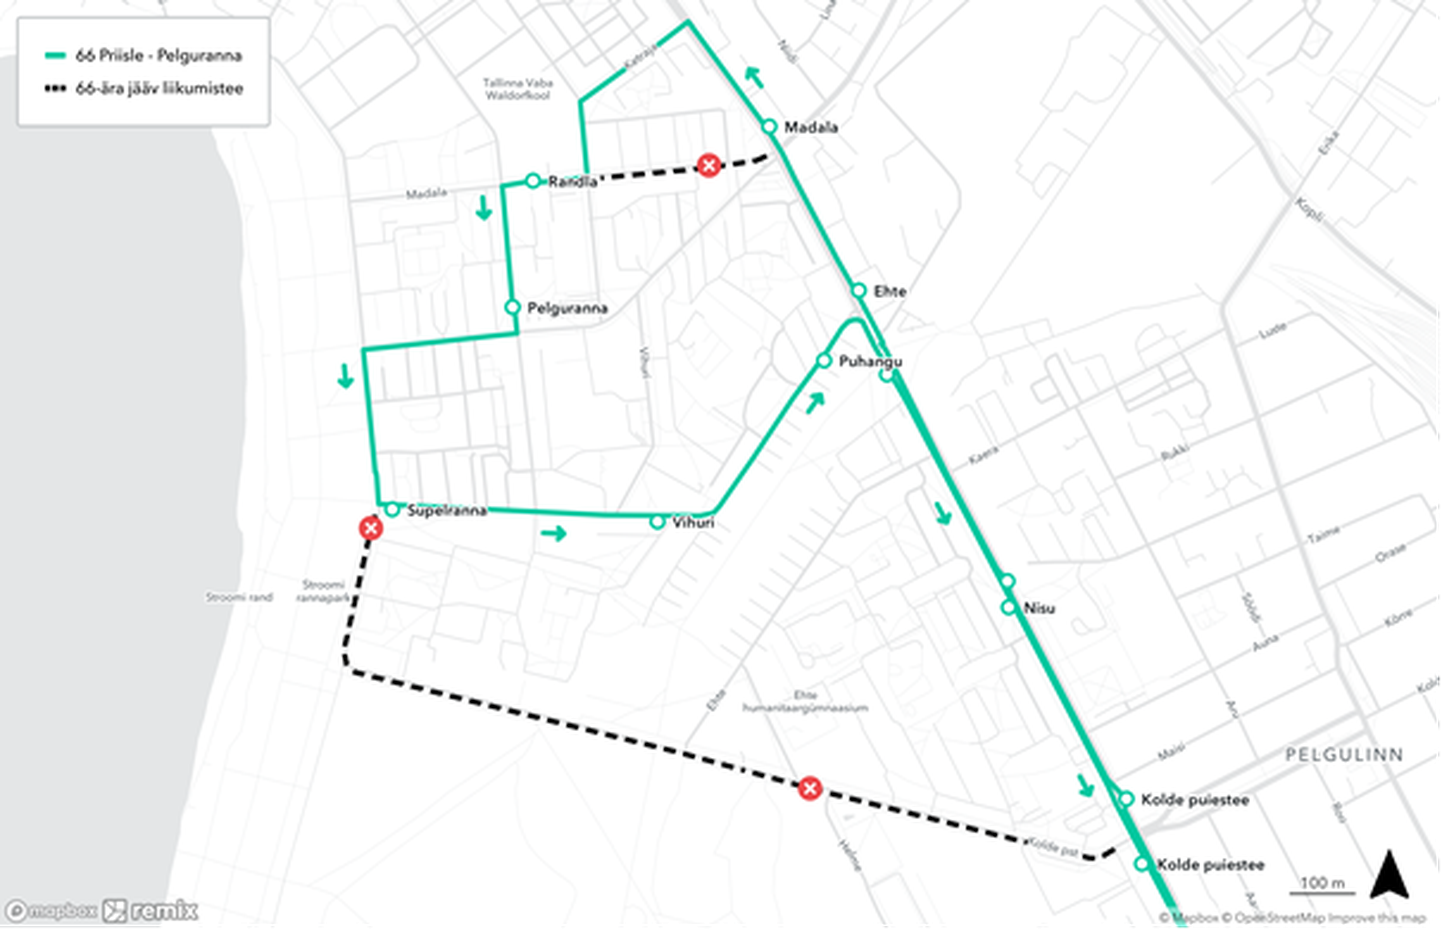 Из-за строительных работ на бульваре Кольде автобус маршрута № 66 будет направлен в объезд.